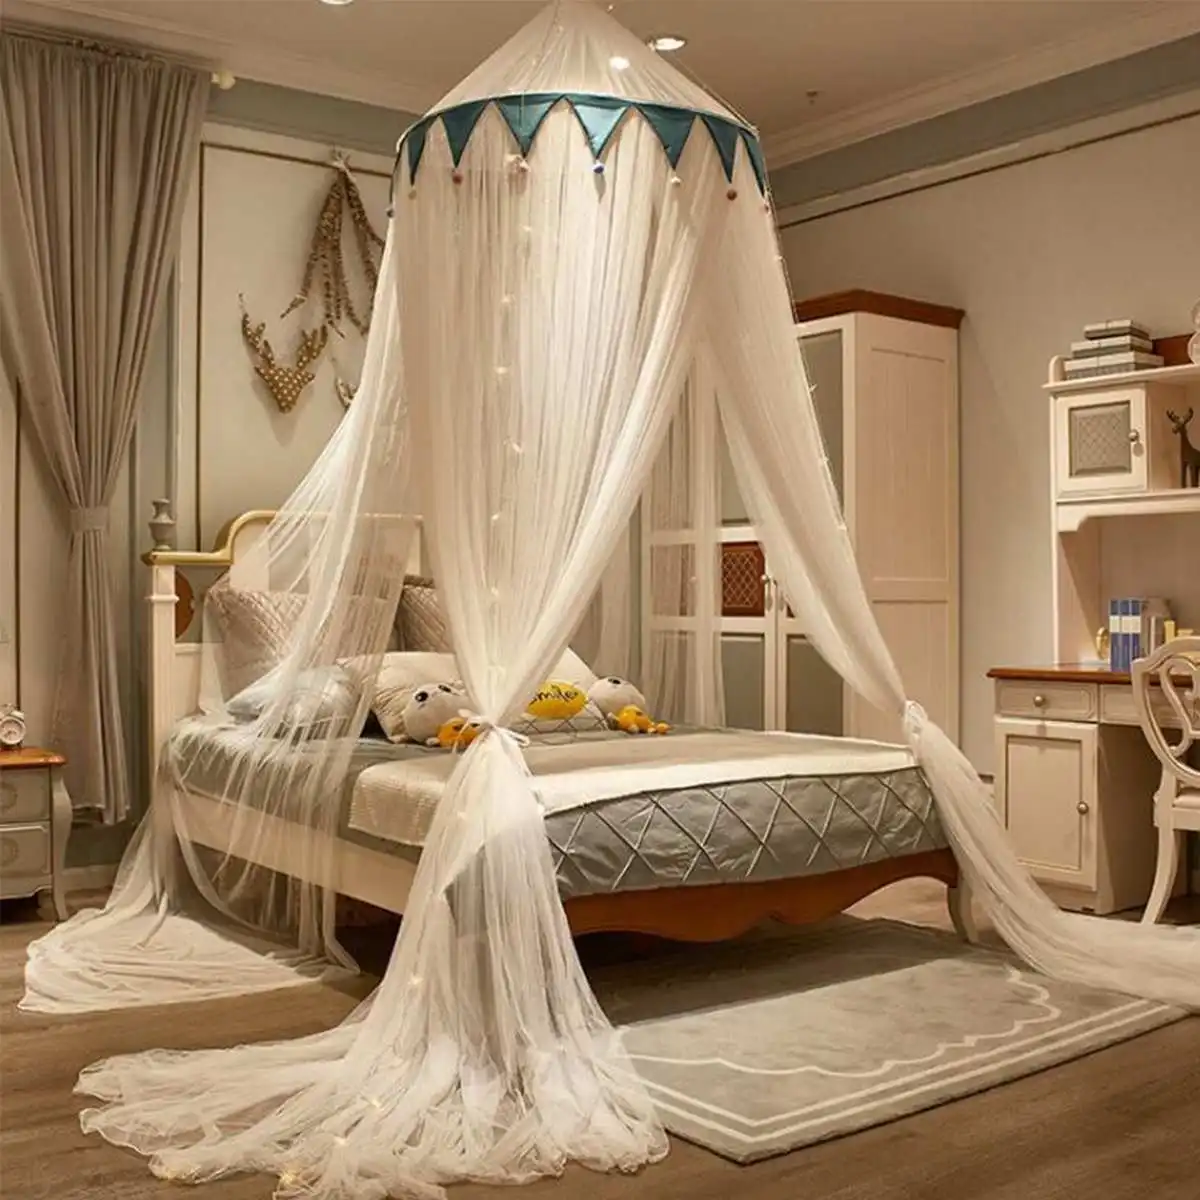 Prinzessin Bett Moskito Net Baldachin Bett Camping Moskito Net Mückenschutz Net Insekten Vorhang Bett Zelt